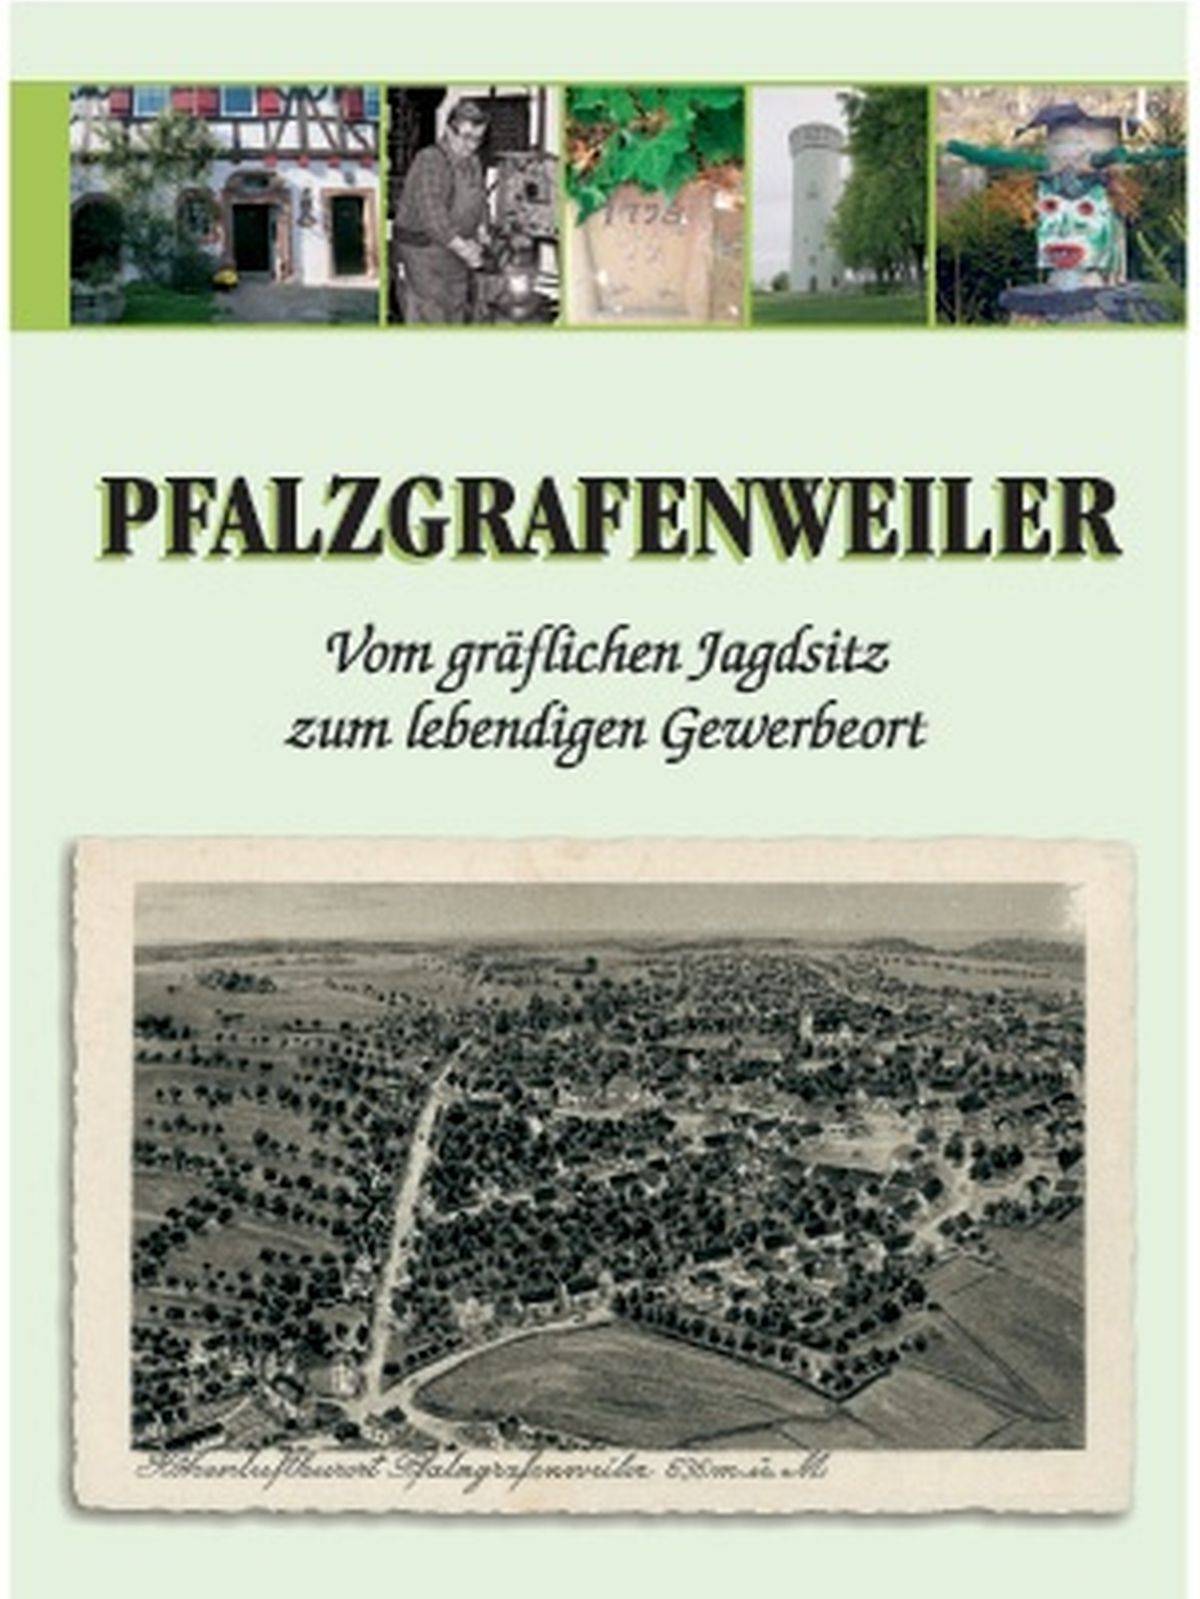                                                     Deckblatt Heimatbuch                                    